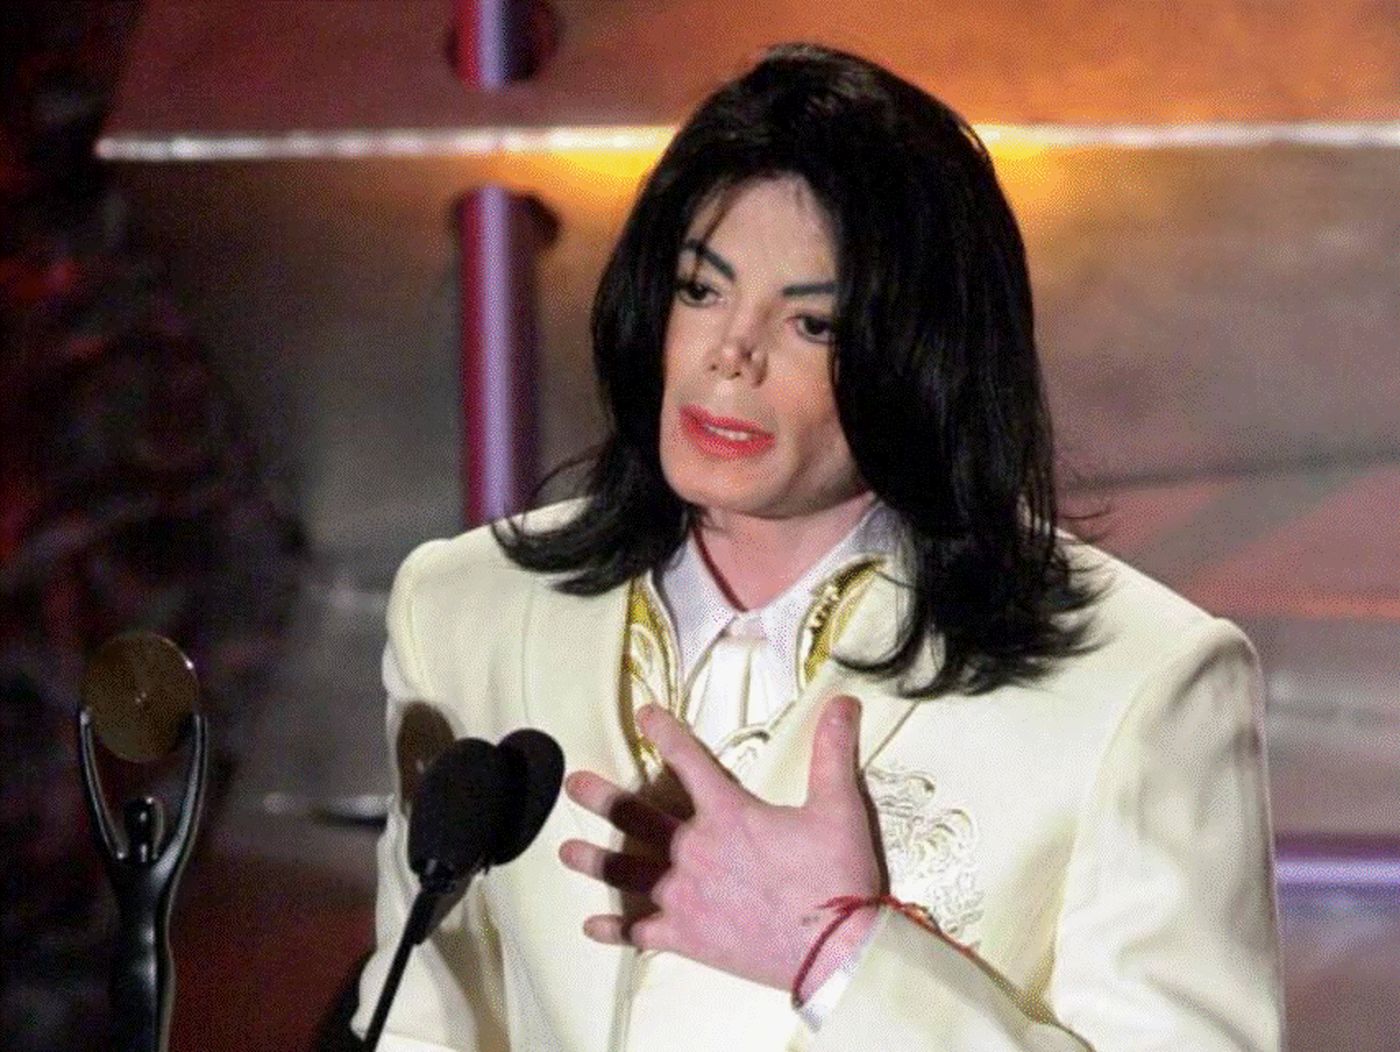 Michael Jackson a iubit o singură femeie toată viața. A cerut-o în căsătorie de mai multe ori, dar l-a refuzat